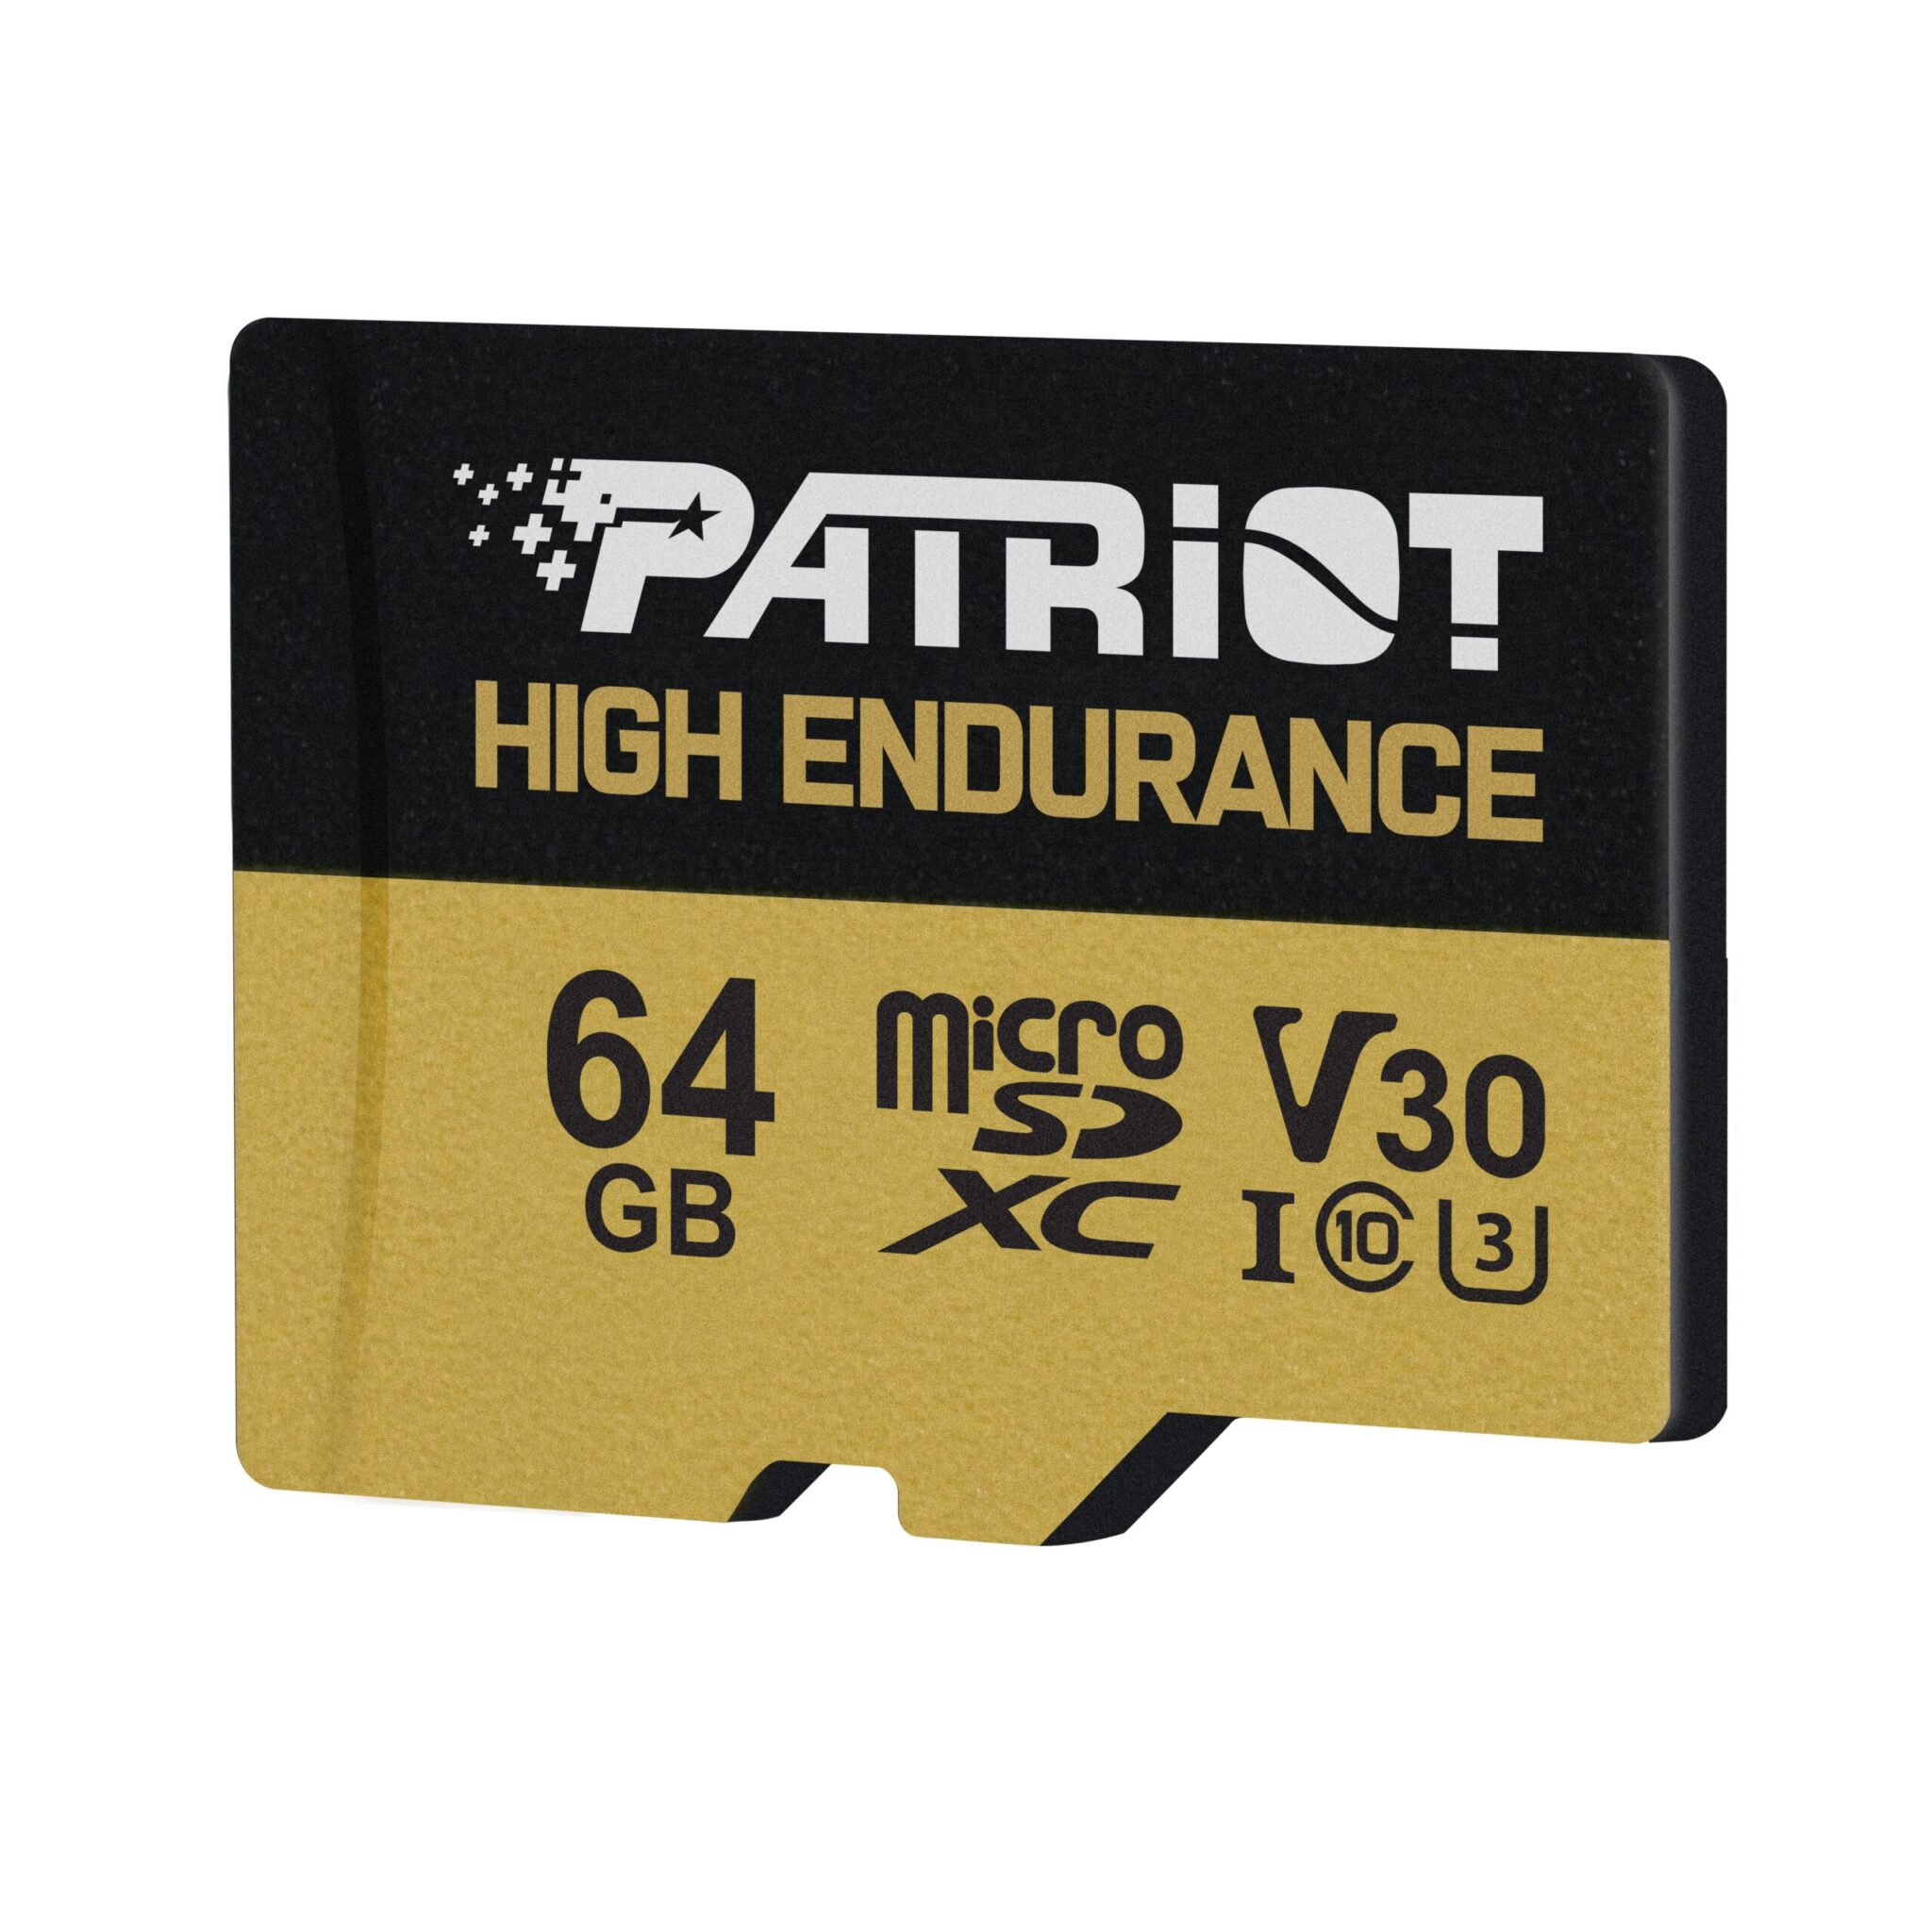 Patriot prezentuje nowe karty pamięci High Endurance microSDHC/XC z serii EP